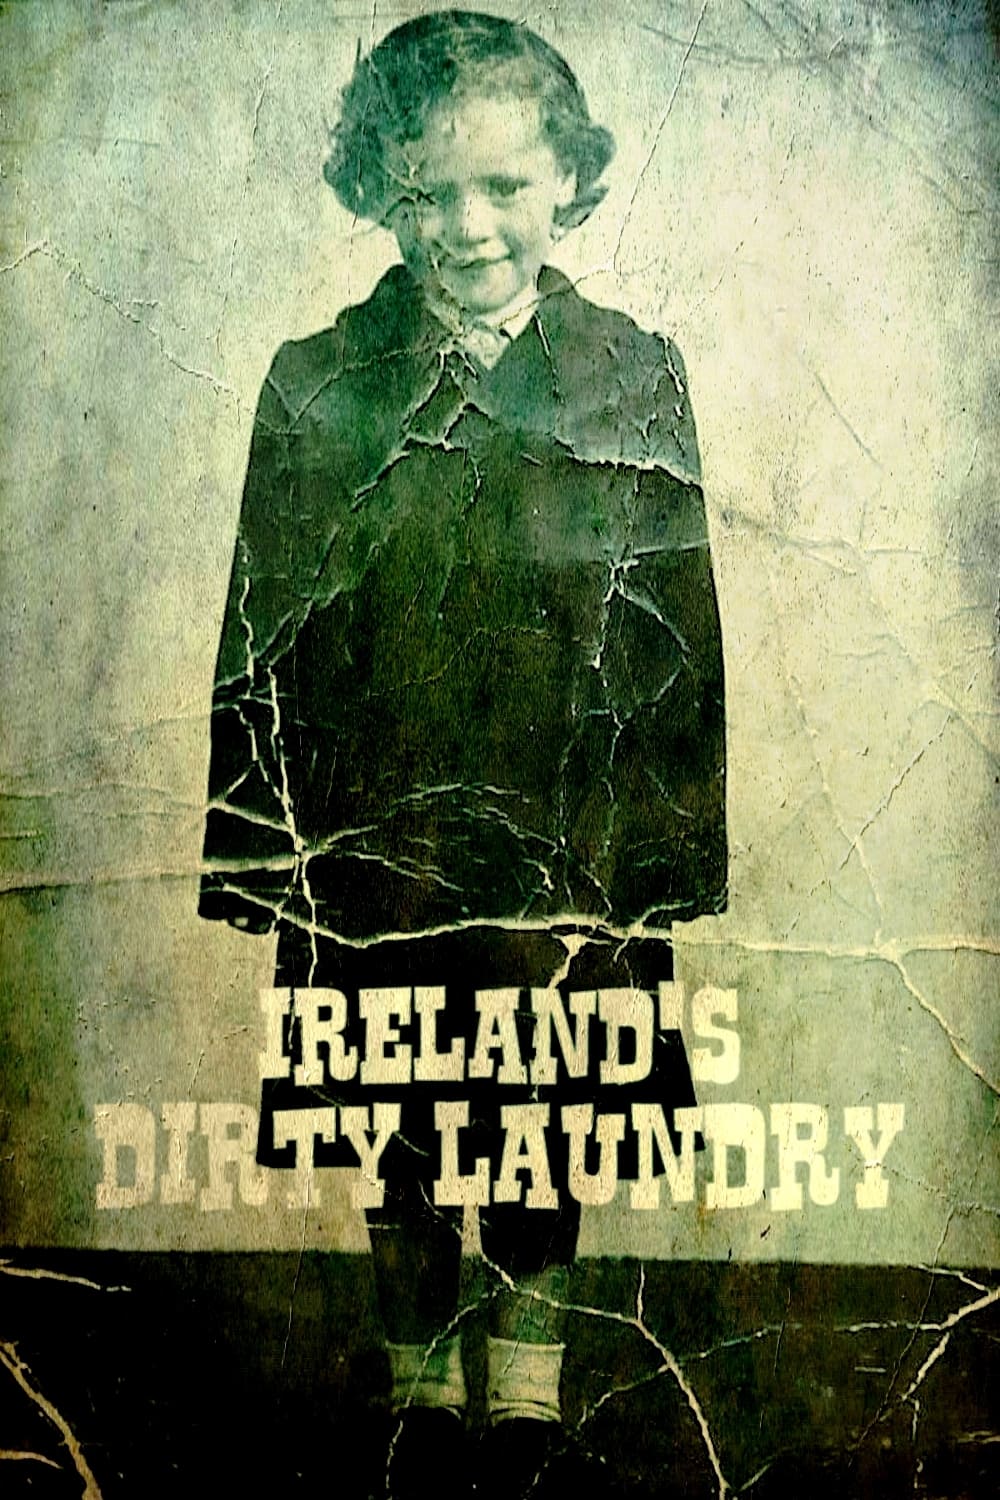 Ireland's Dirty Laundry